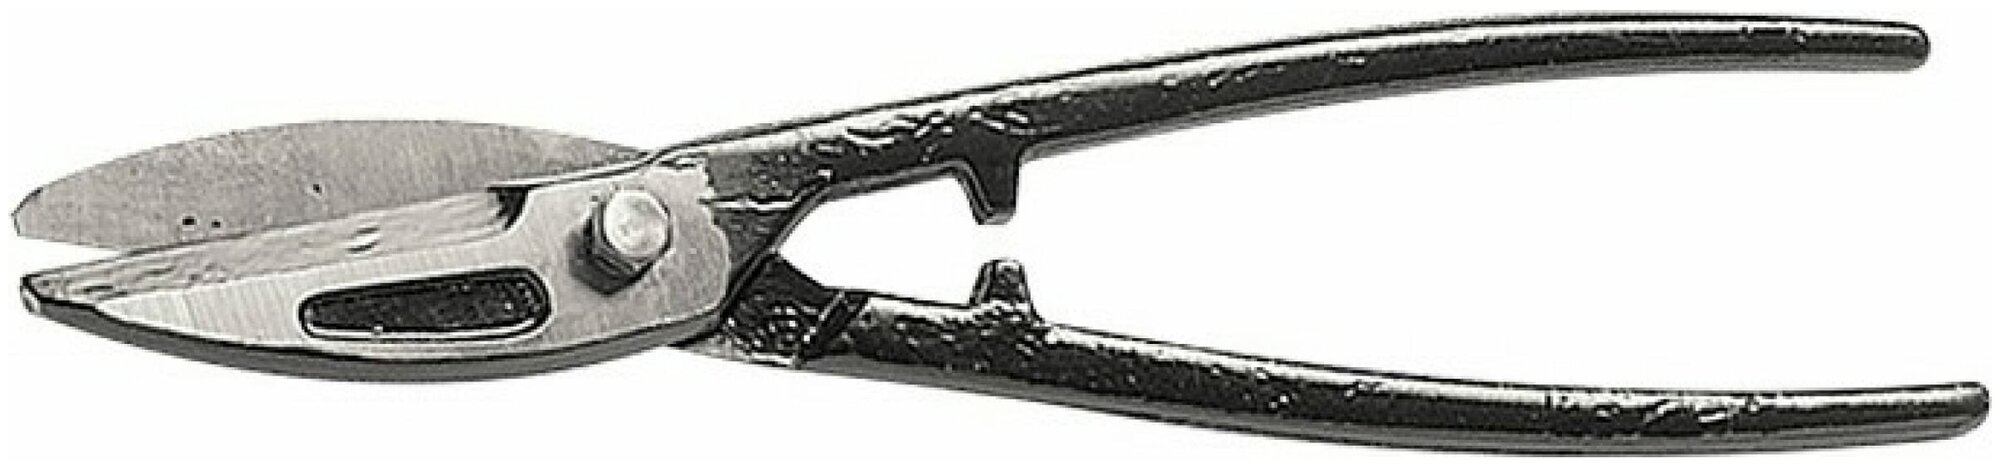 Ножницы по металлу, 290 мм, пряморежущие Горизонт 78342